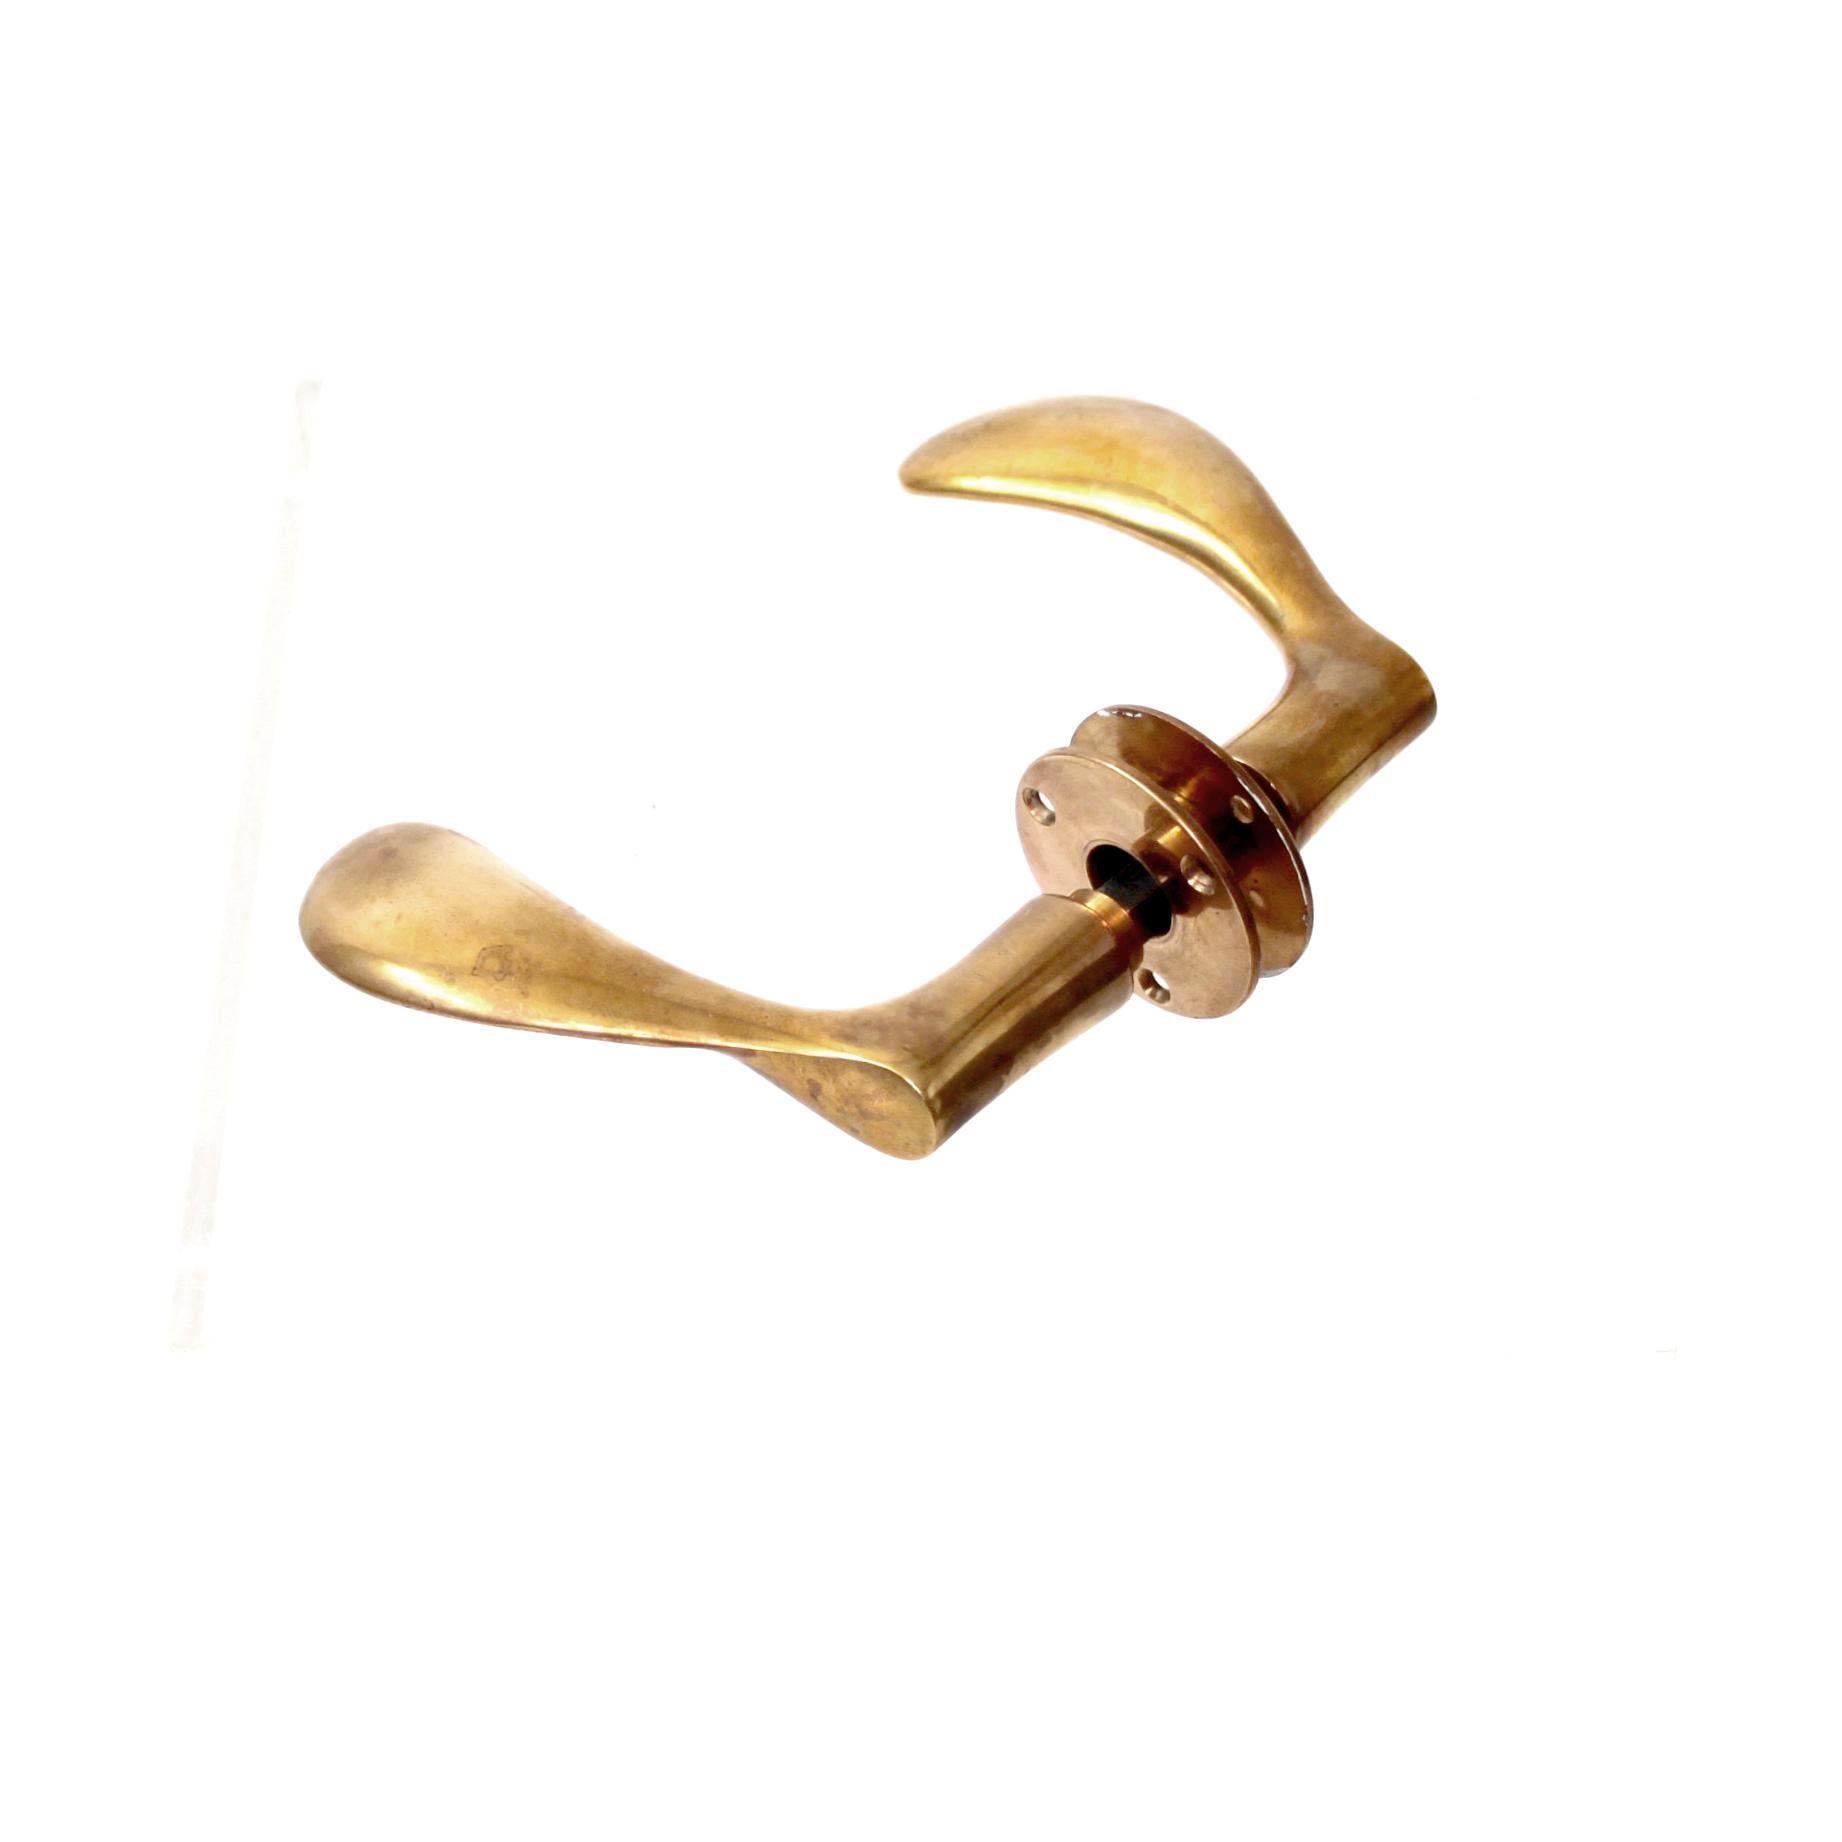 Polished Arne Jacobsen Brass Door Handles (Ten available)